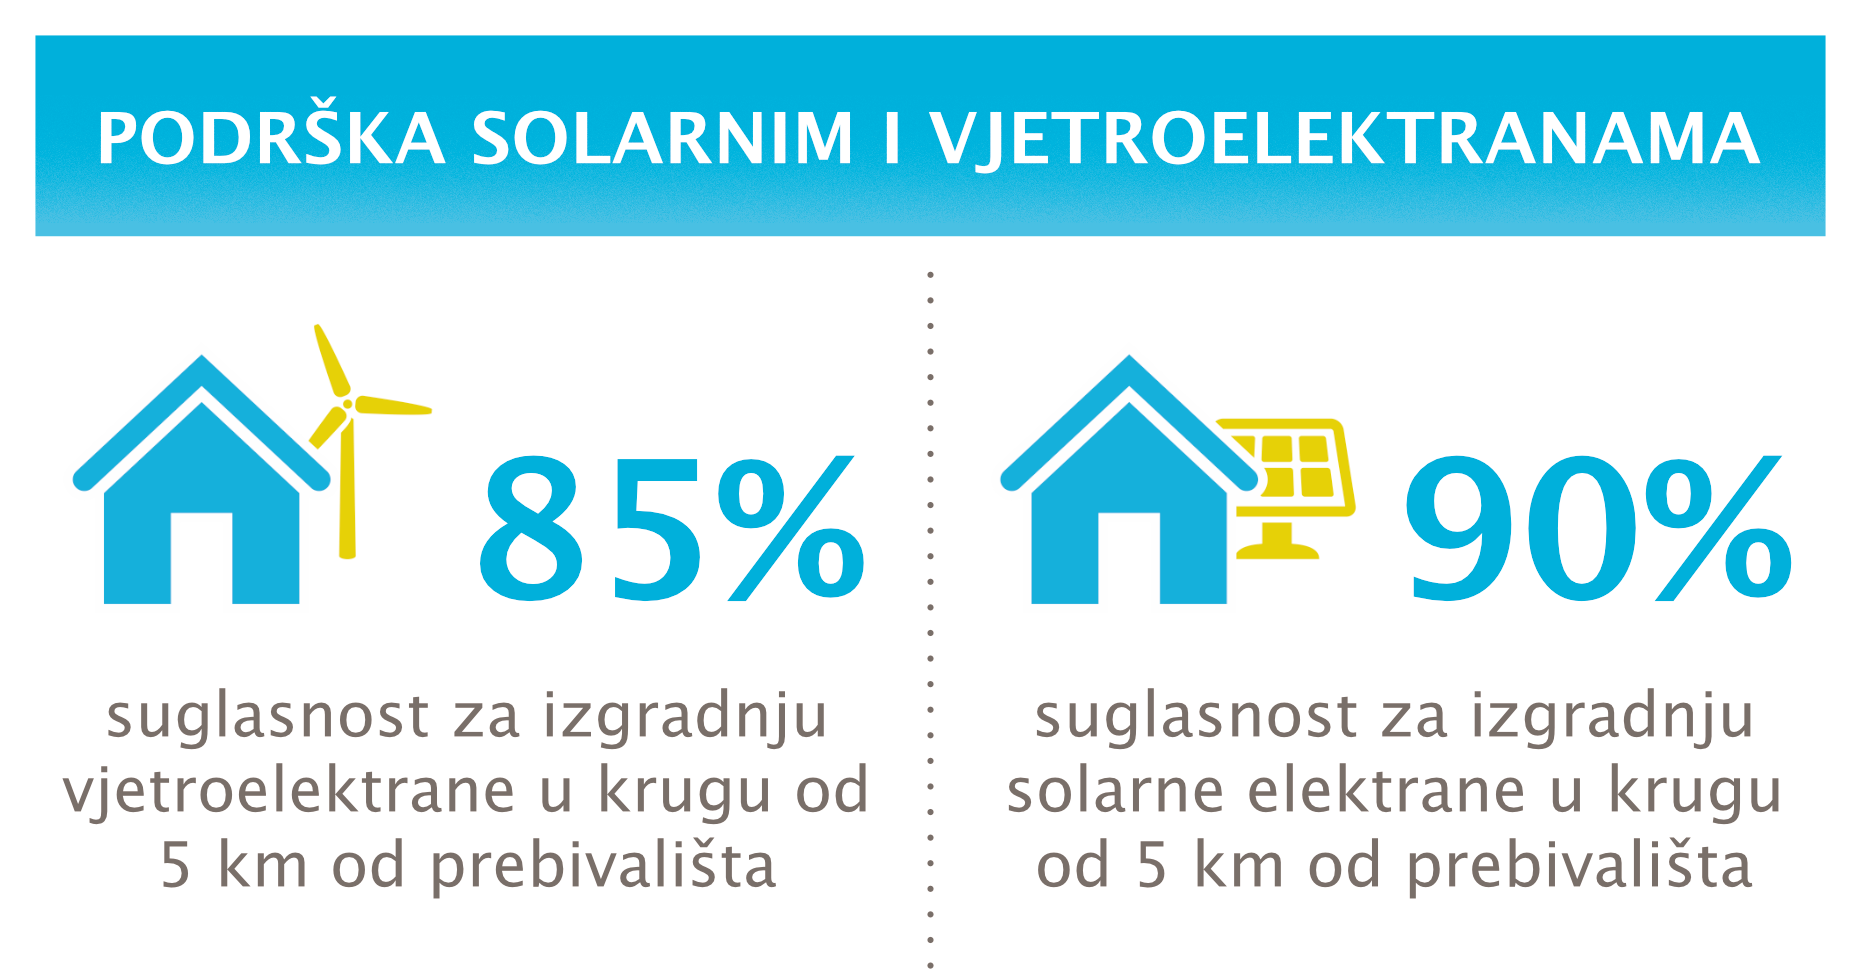 Istraživanje: Hrvati podržavaju nove solare i vjetroelektrane, nedovoljno informirani o vodiku